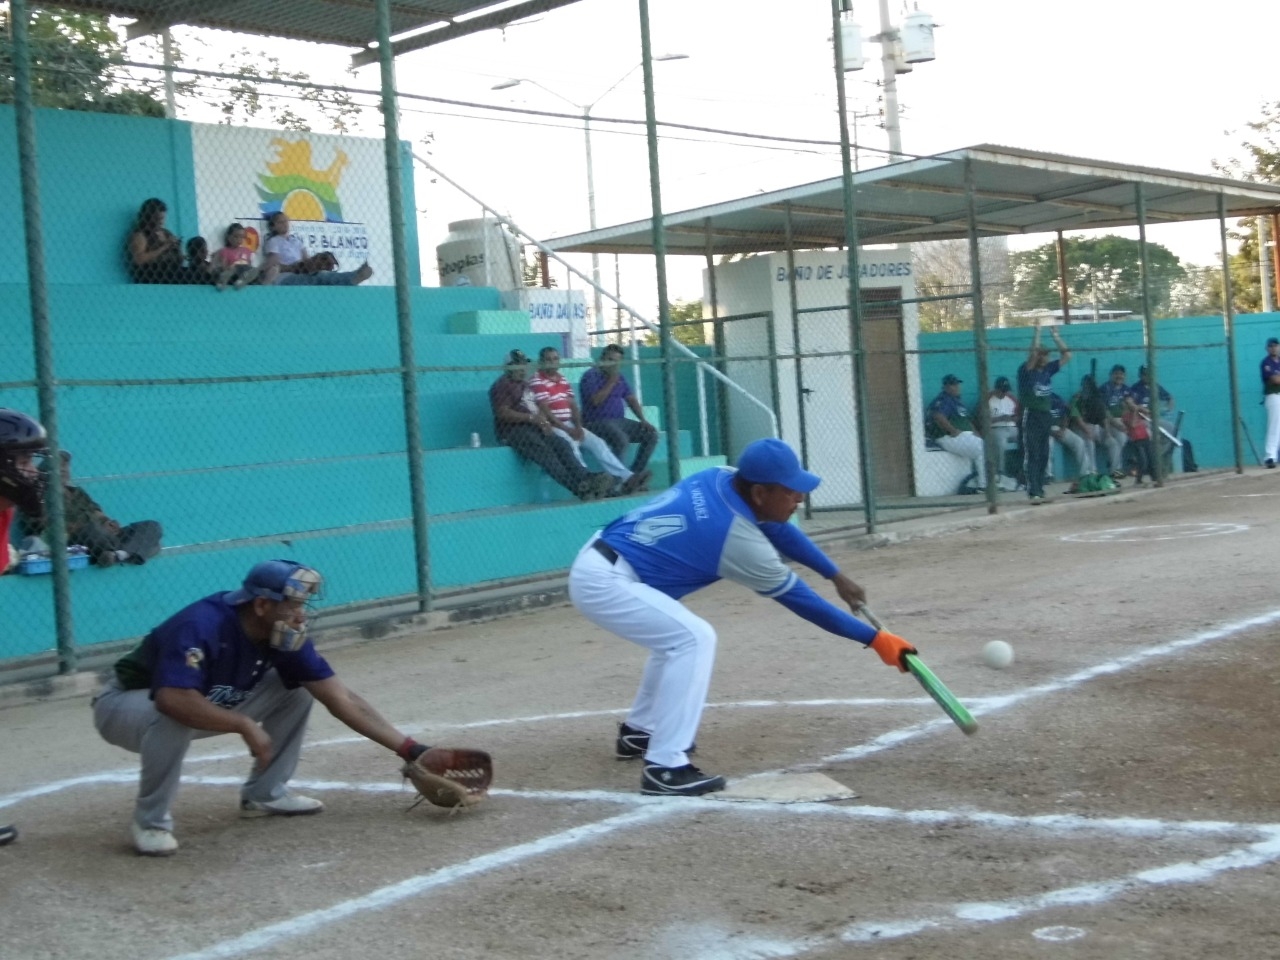 Los equipos de softbol en Chetumal se dicen listos para jugar